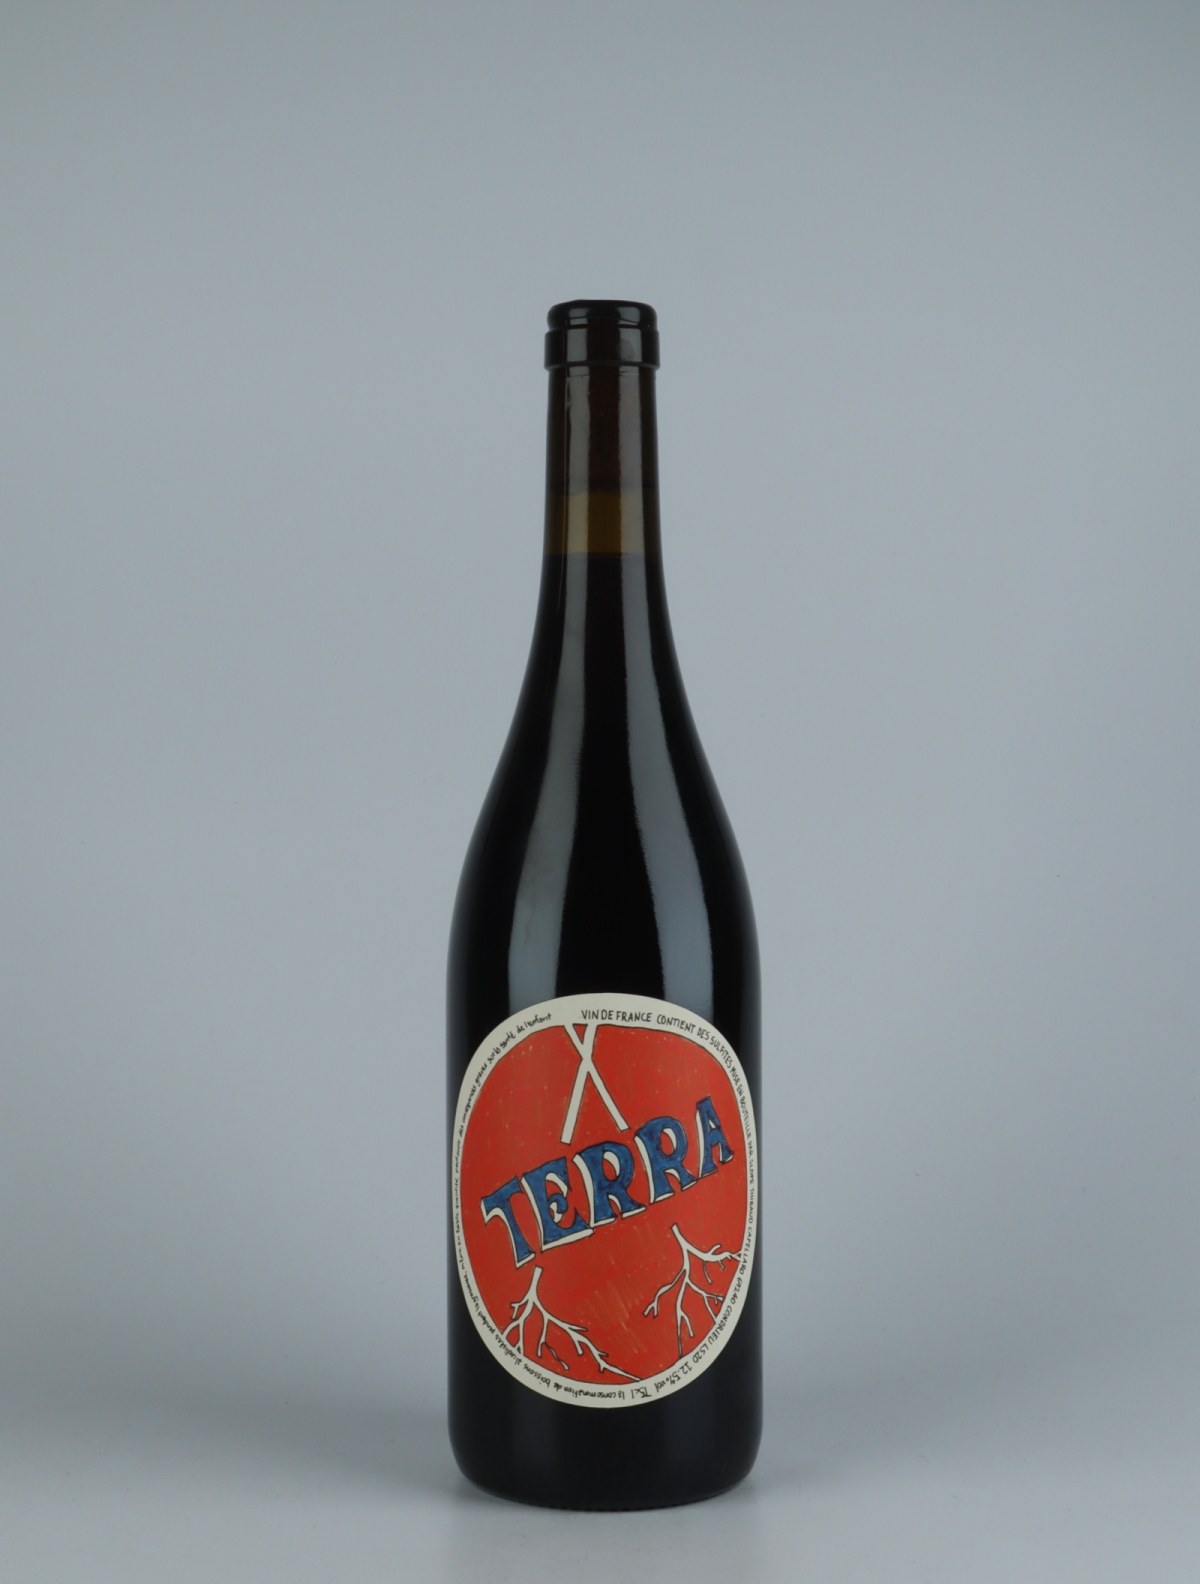 A bottle 2020 Terra Red wine from , Rhône in France